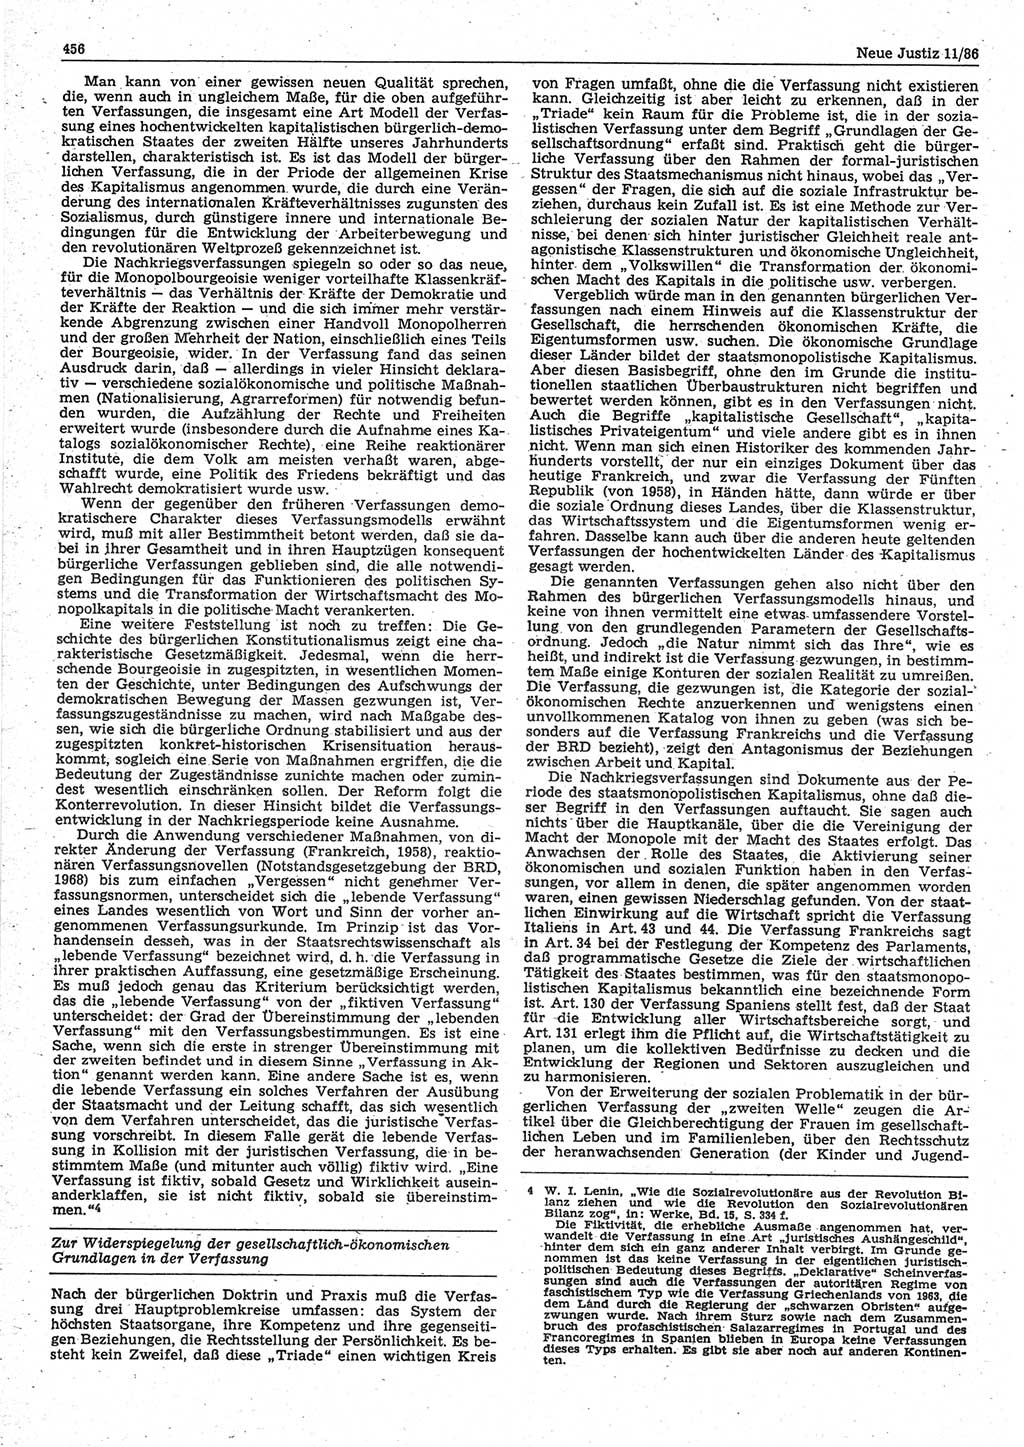 Neue Justiz (NJ), Zeitschrift für sozialistisches Recht und Gesetzlichkeit [Deutsche Demokratische Republik (DDR)], 40. Jahrgang 1986, Seite 456 (NJ DDR 1986, S. 456)